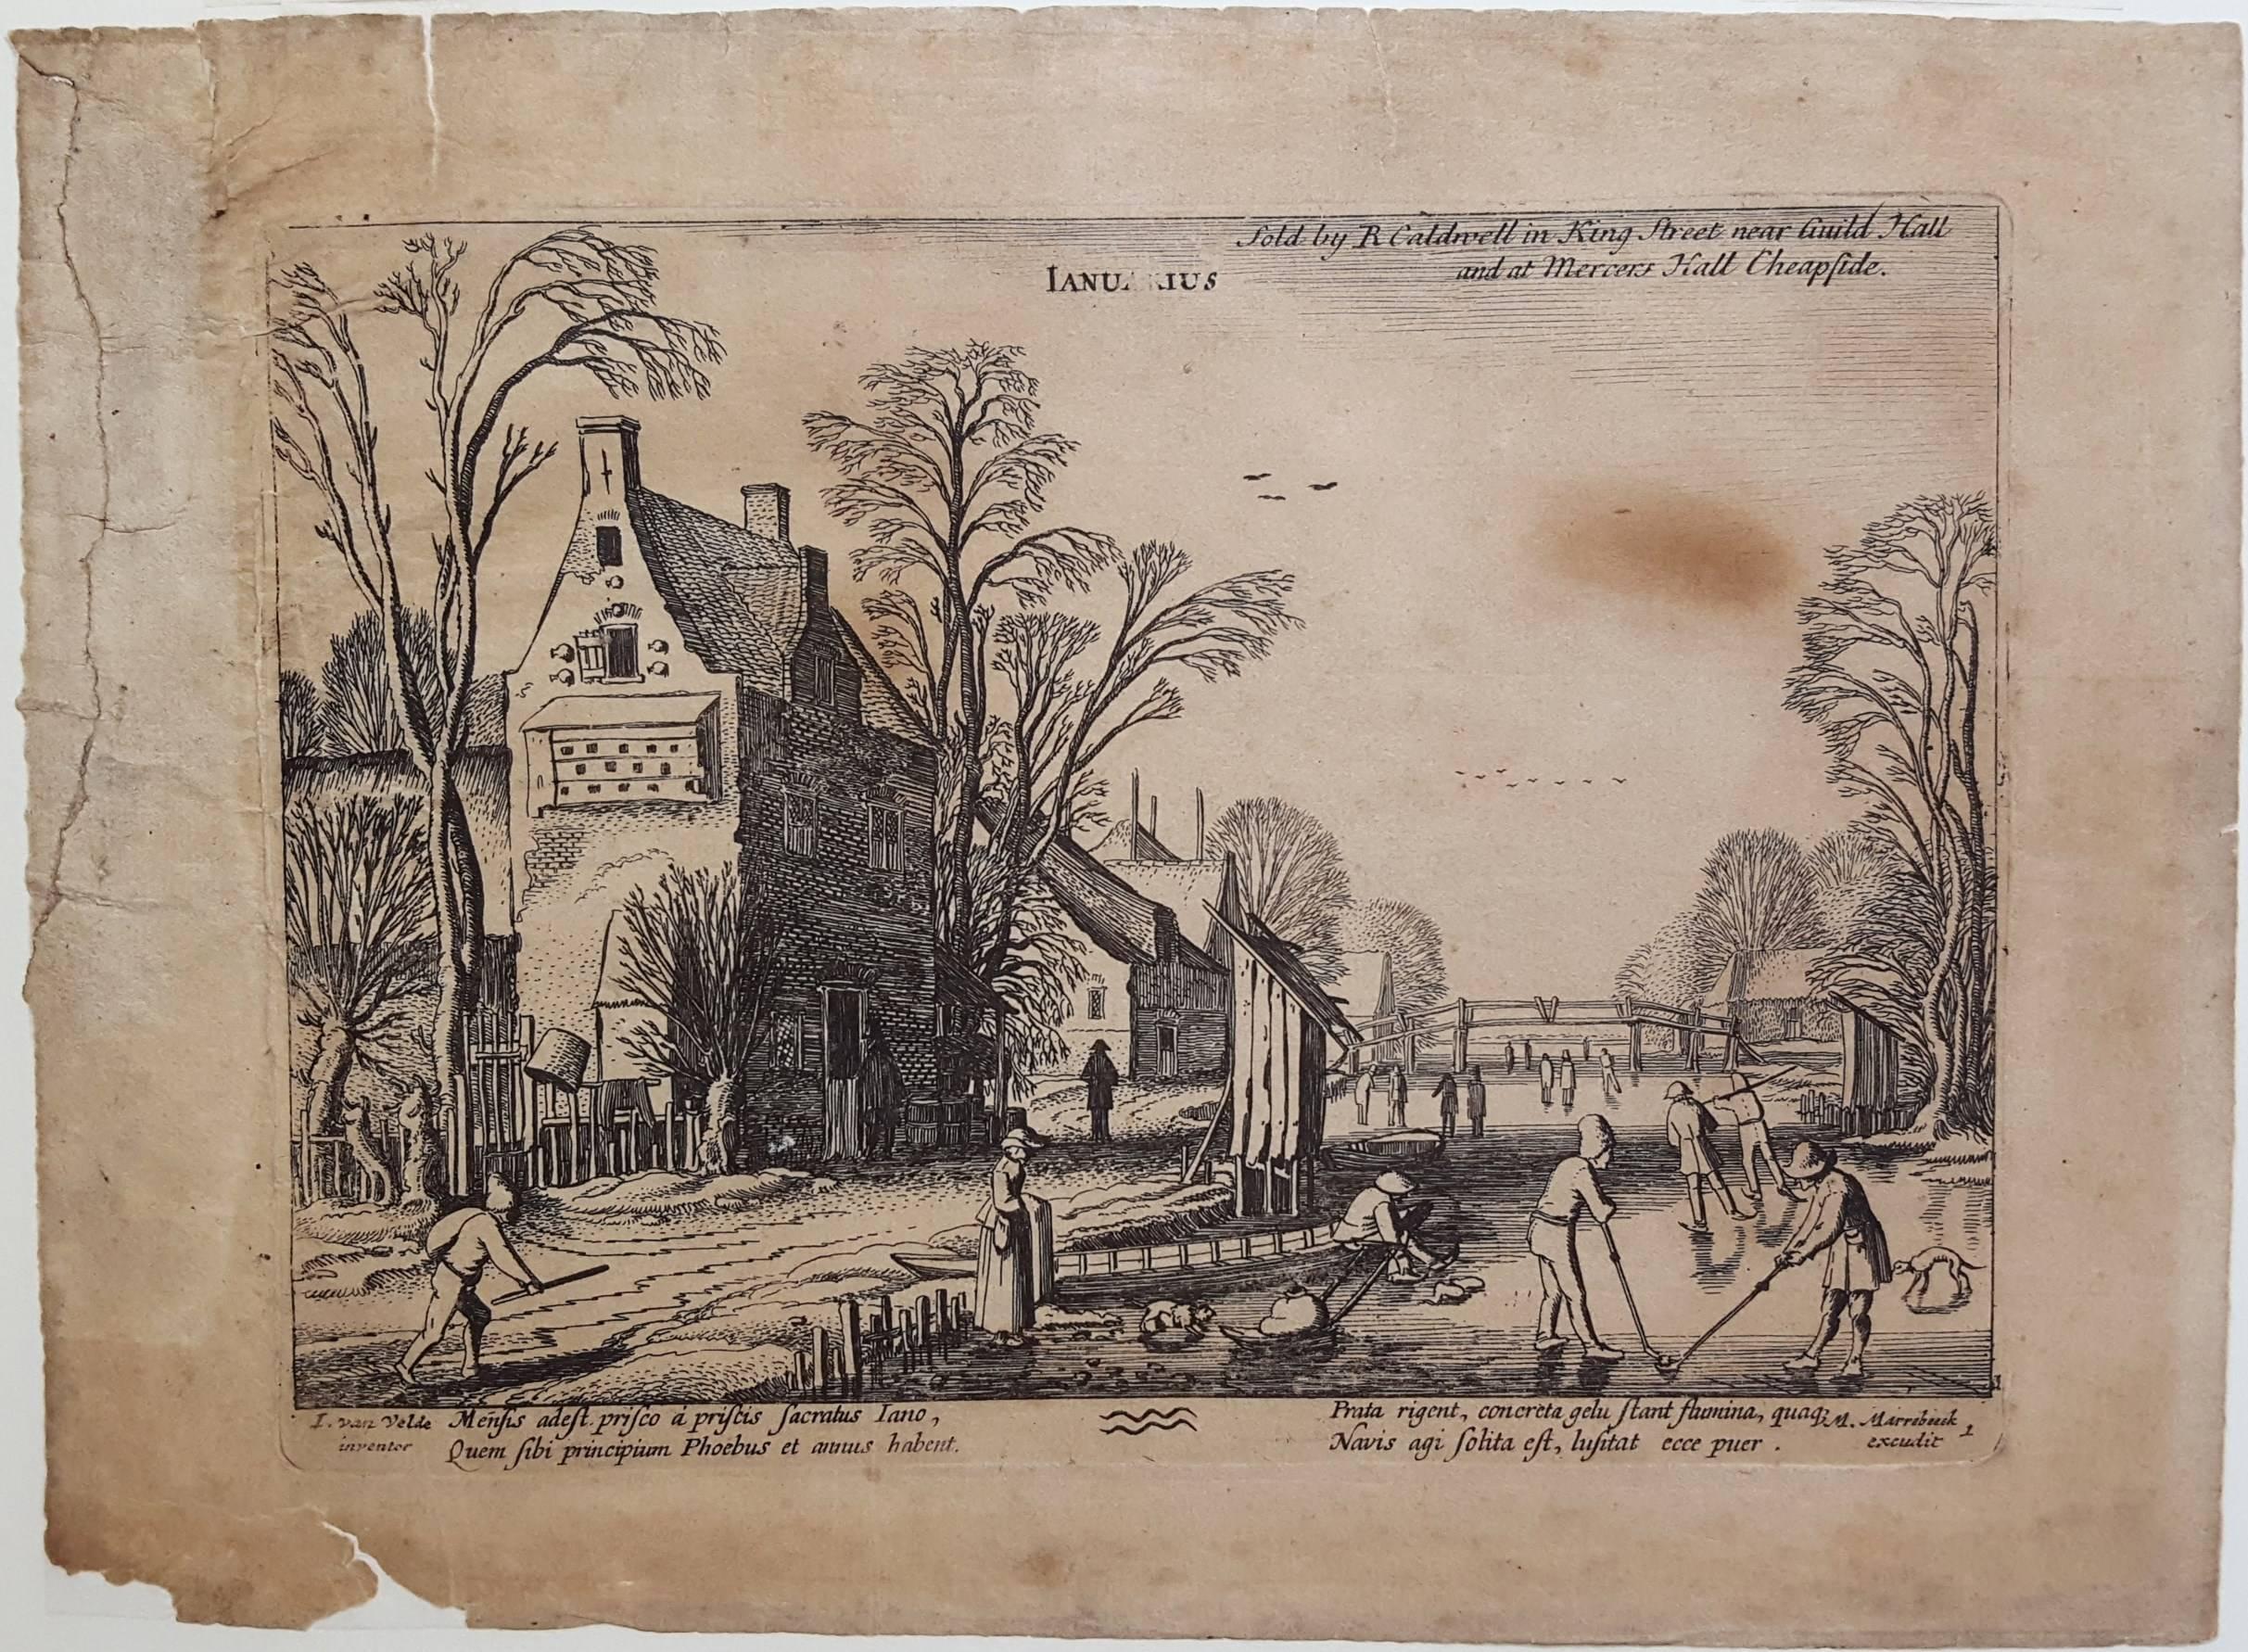 The Months (Complete Set of 12 Copper Plate Engravings) - Print by Jan Van de Velde